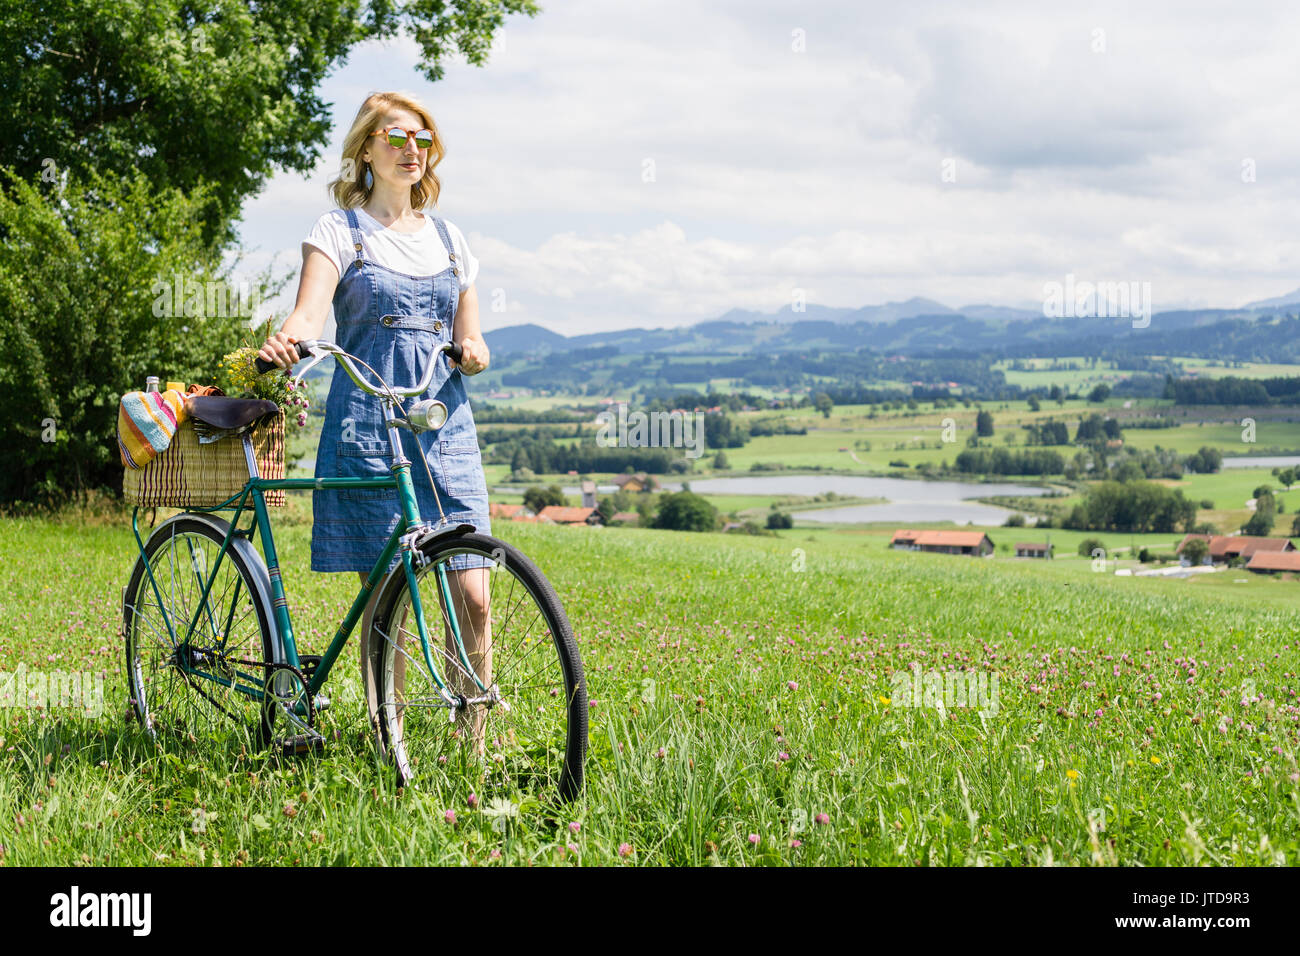 Frau gehen mit retro Fahrrad- und Korb auf Blumenwiese Stockfoto